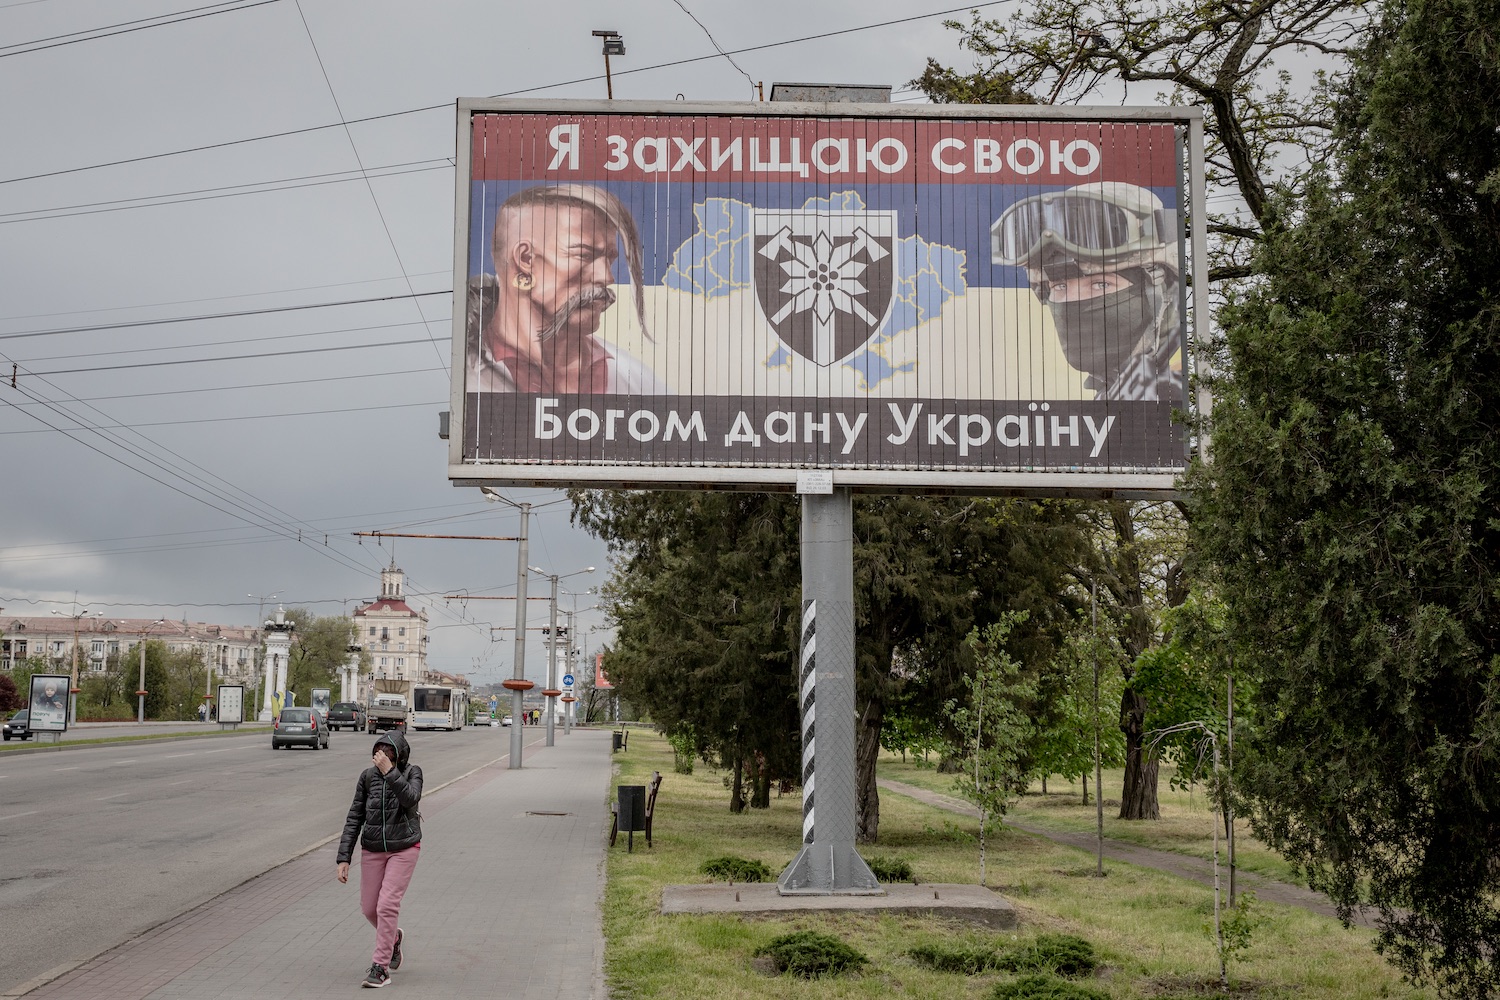 „Védelmezem Istentől kapott Ukrajnámat” – a munkácsi rohamdandár plakátja